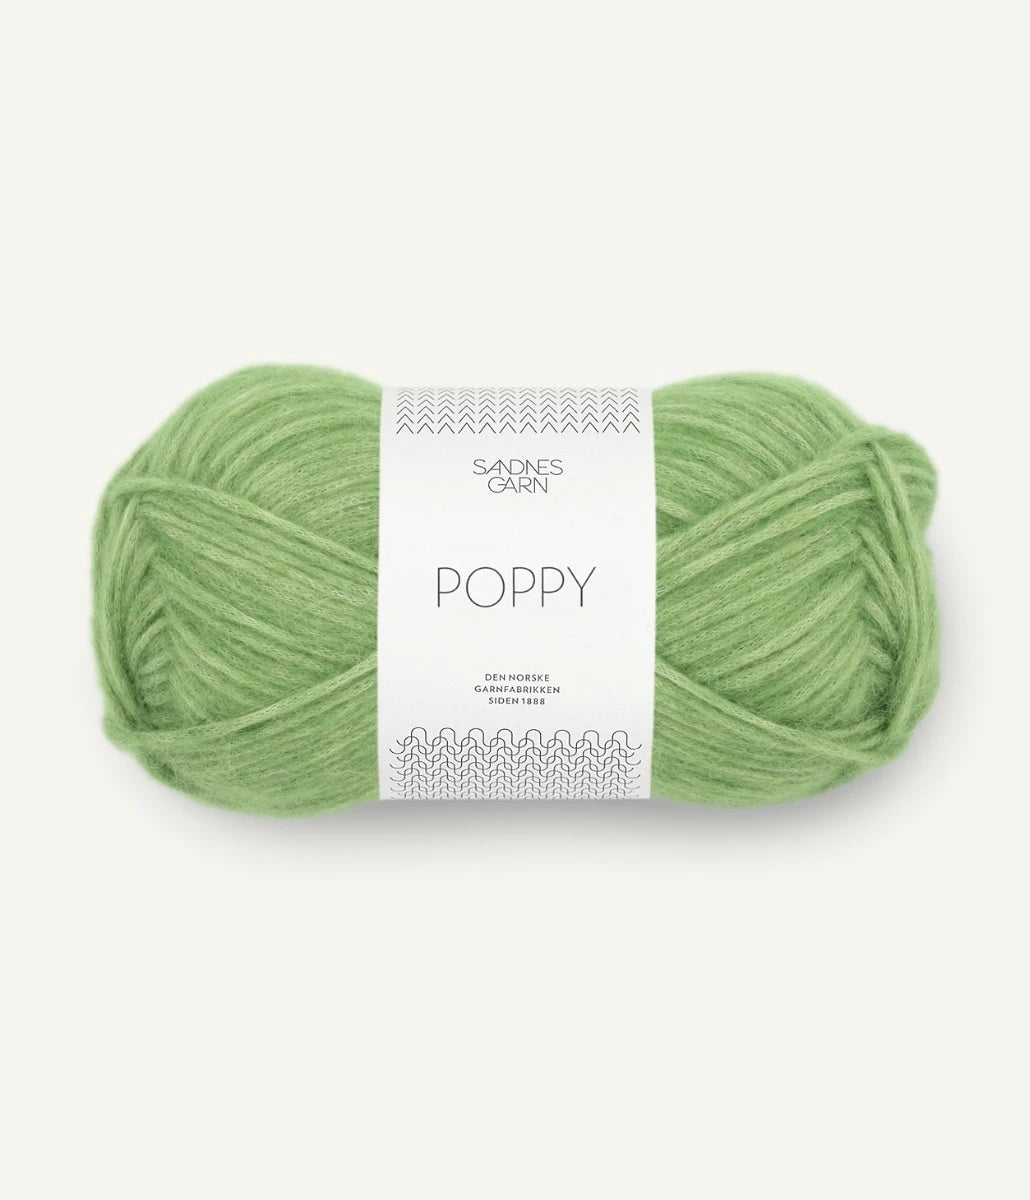 Kuvassa on Sandnes Garn Poppy -lanka (yarn) värissä Spring Green.